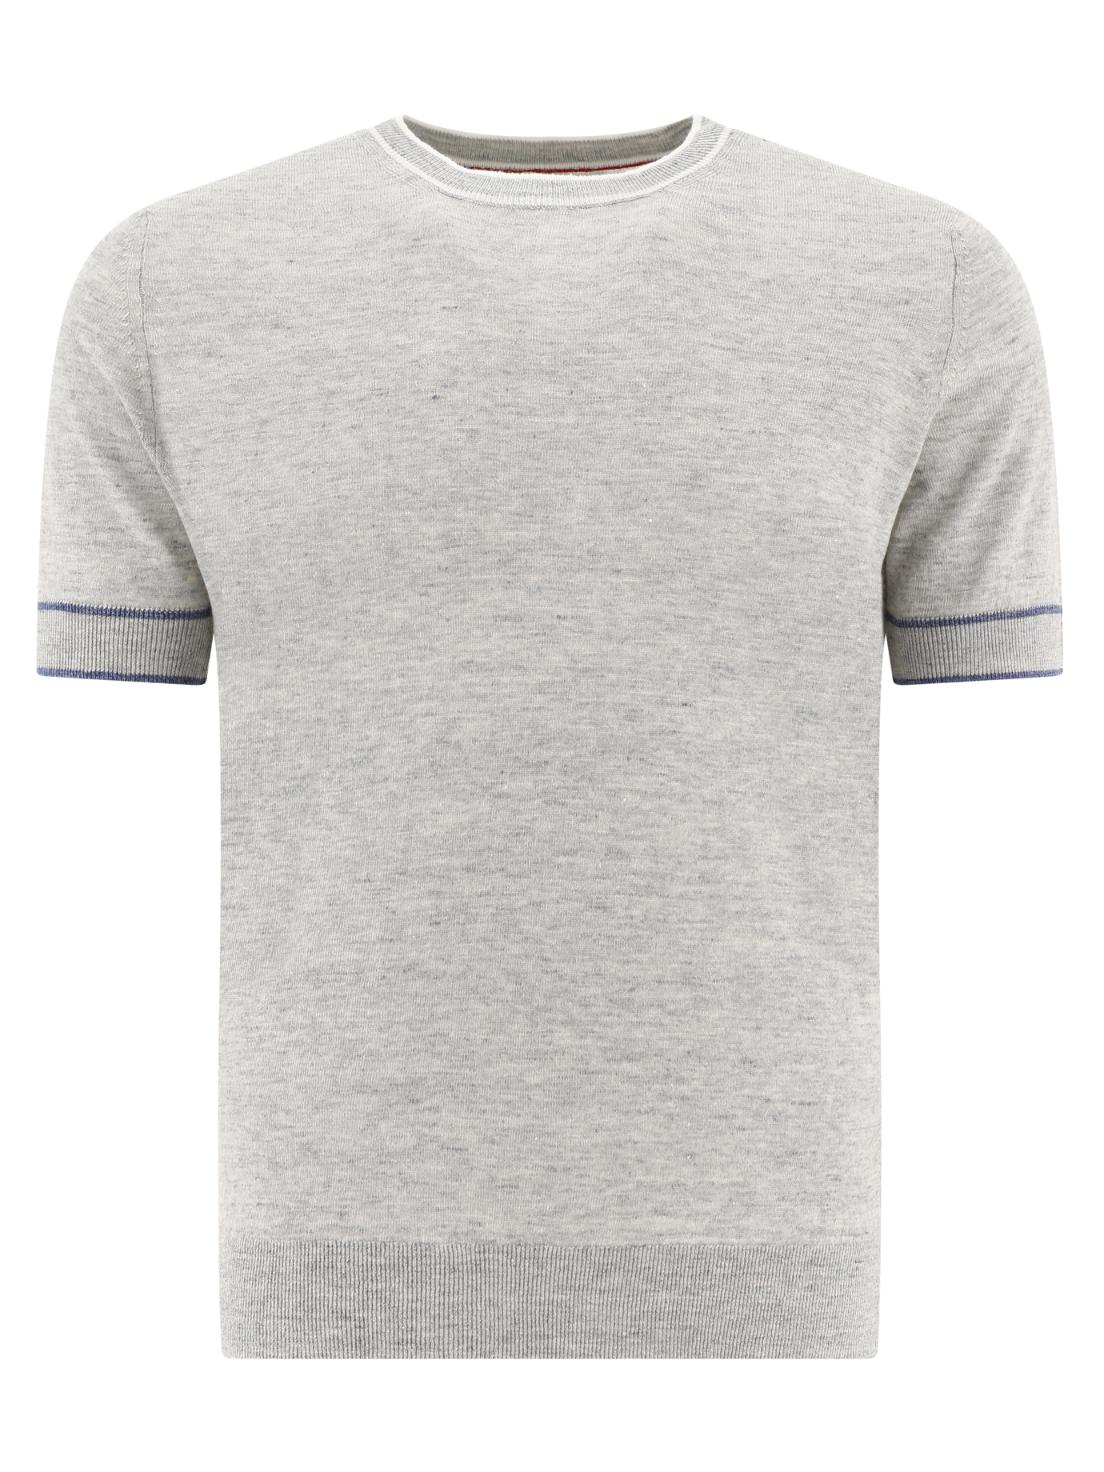 [해외배송 관부가세 포함] 브루넬로 쿠치넬리 Grey Knitted tshirt 8808748